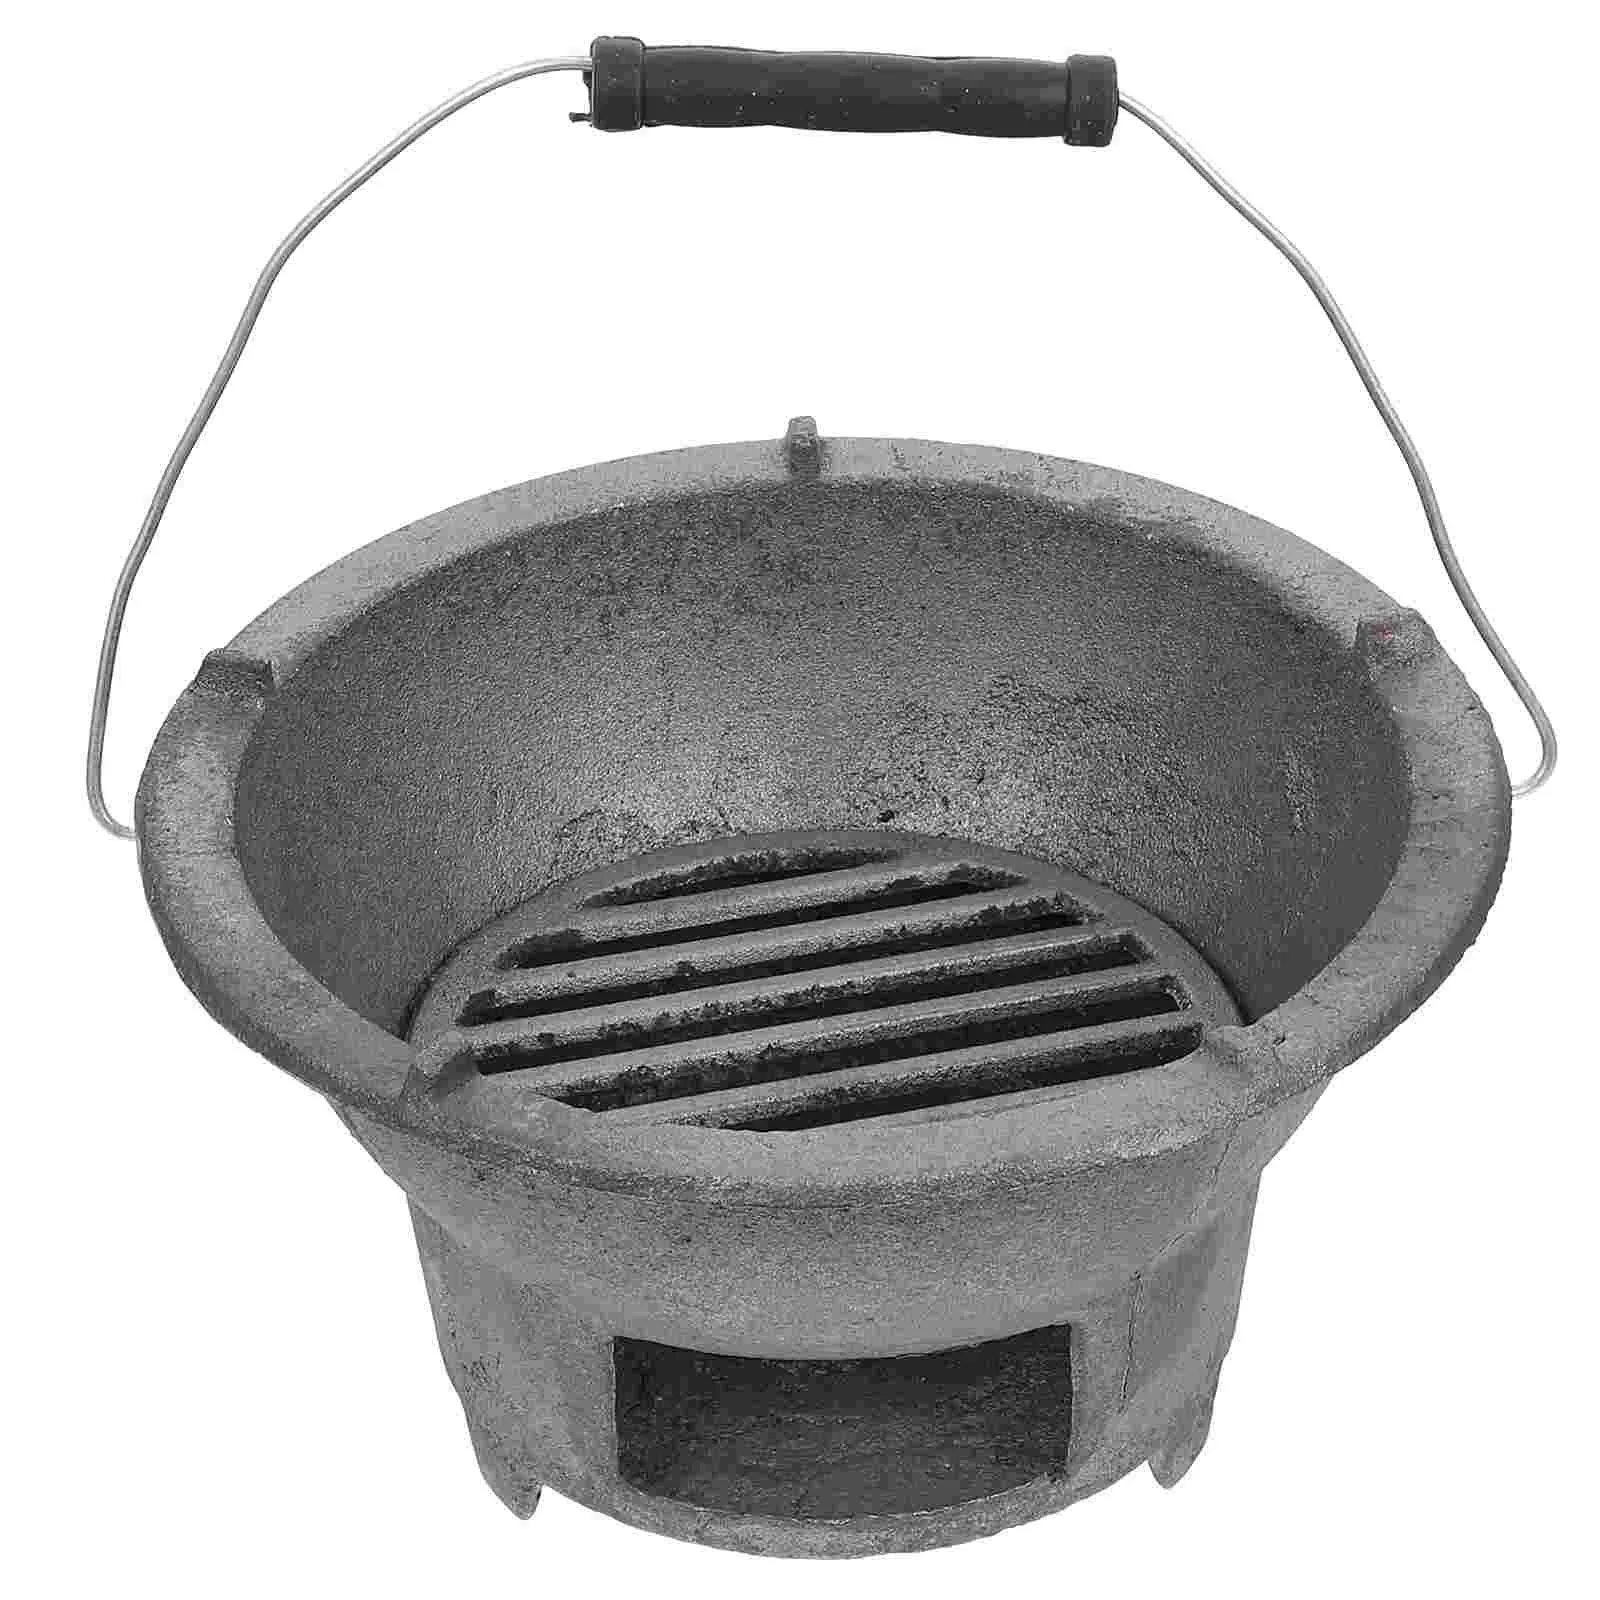 Griglie Grill Fornello Barbecue Hibachi giapponese Ferro Fuoco Piccolo barbecue a carbone fuso Portatile da campeggio Stile interno da tavolo Coreano all'aperto